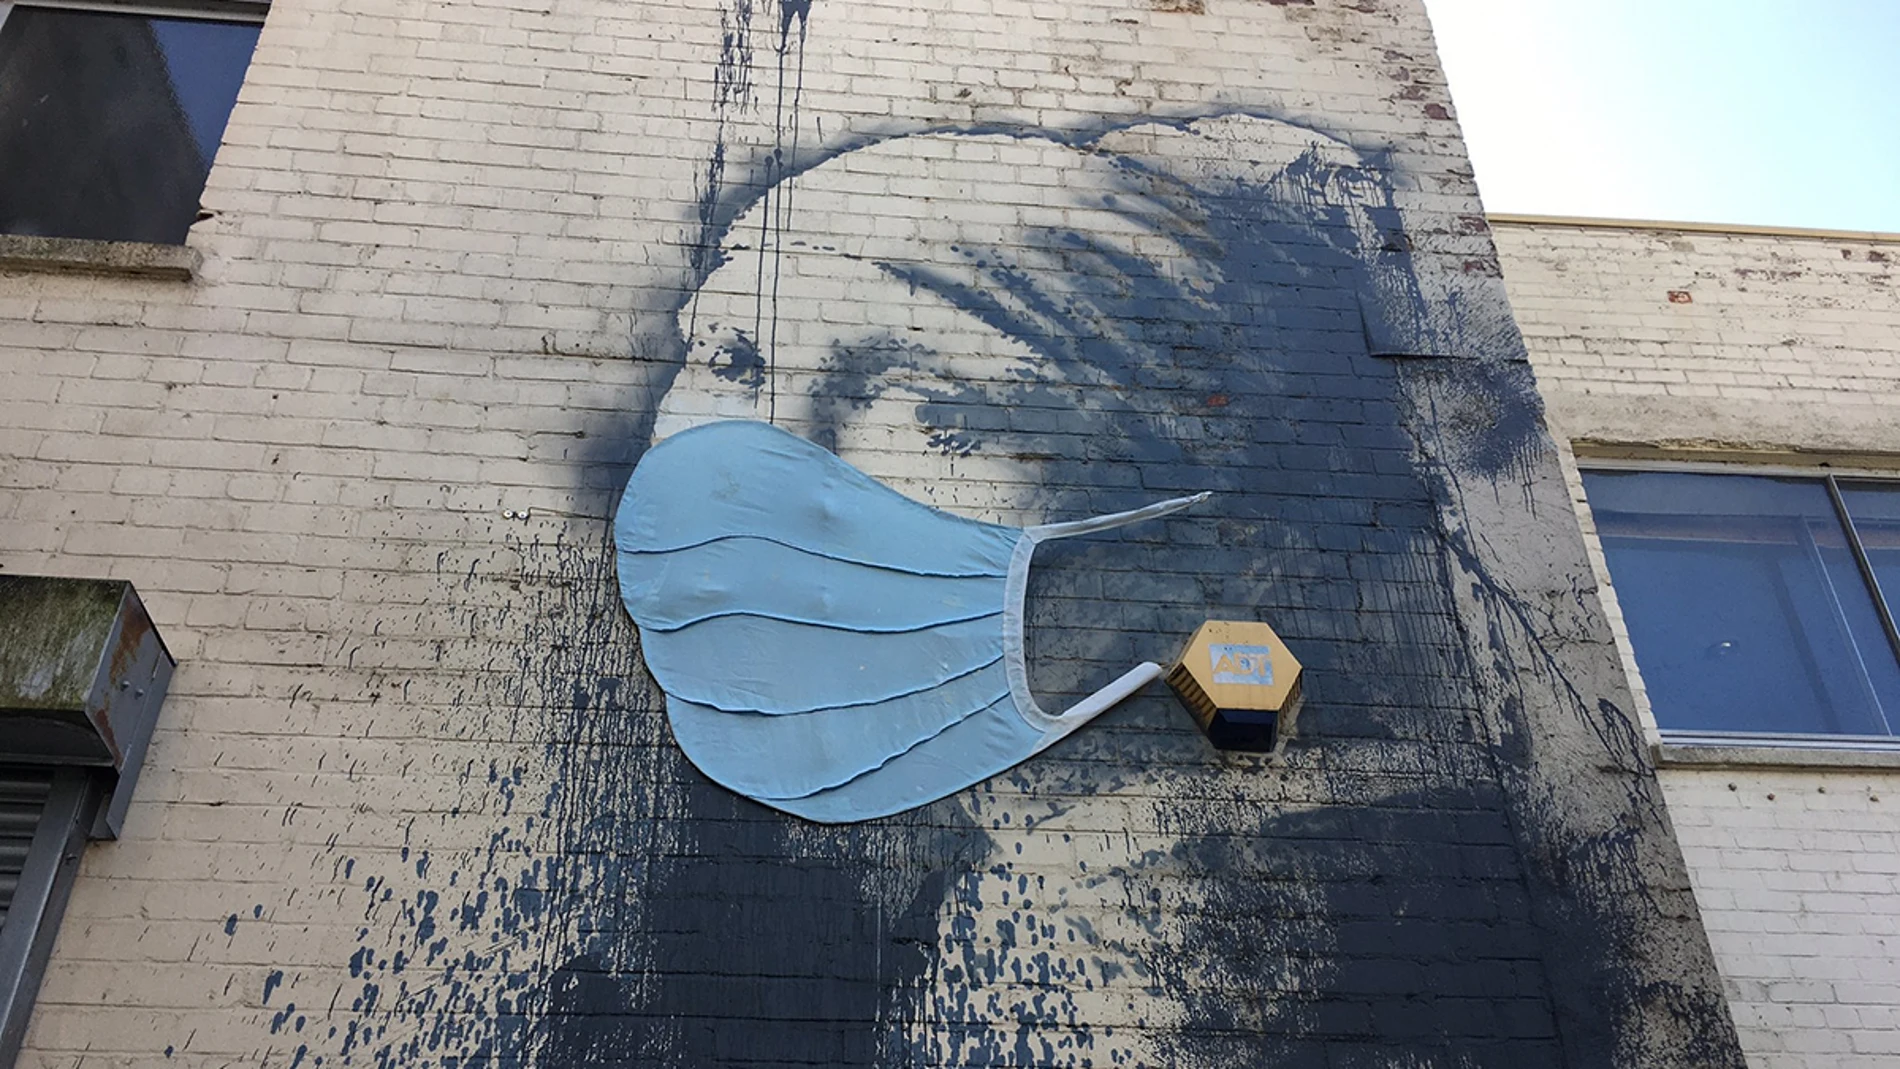 "La oven de la perla" adaptada por Banksy ha aparecido cubierta con una inmensa mascarilla azul